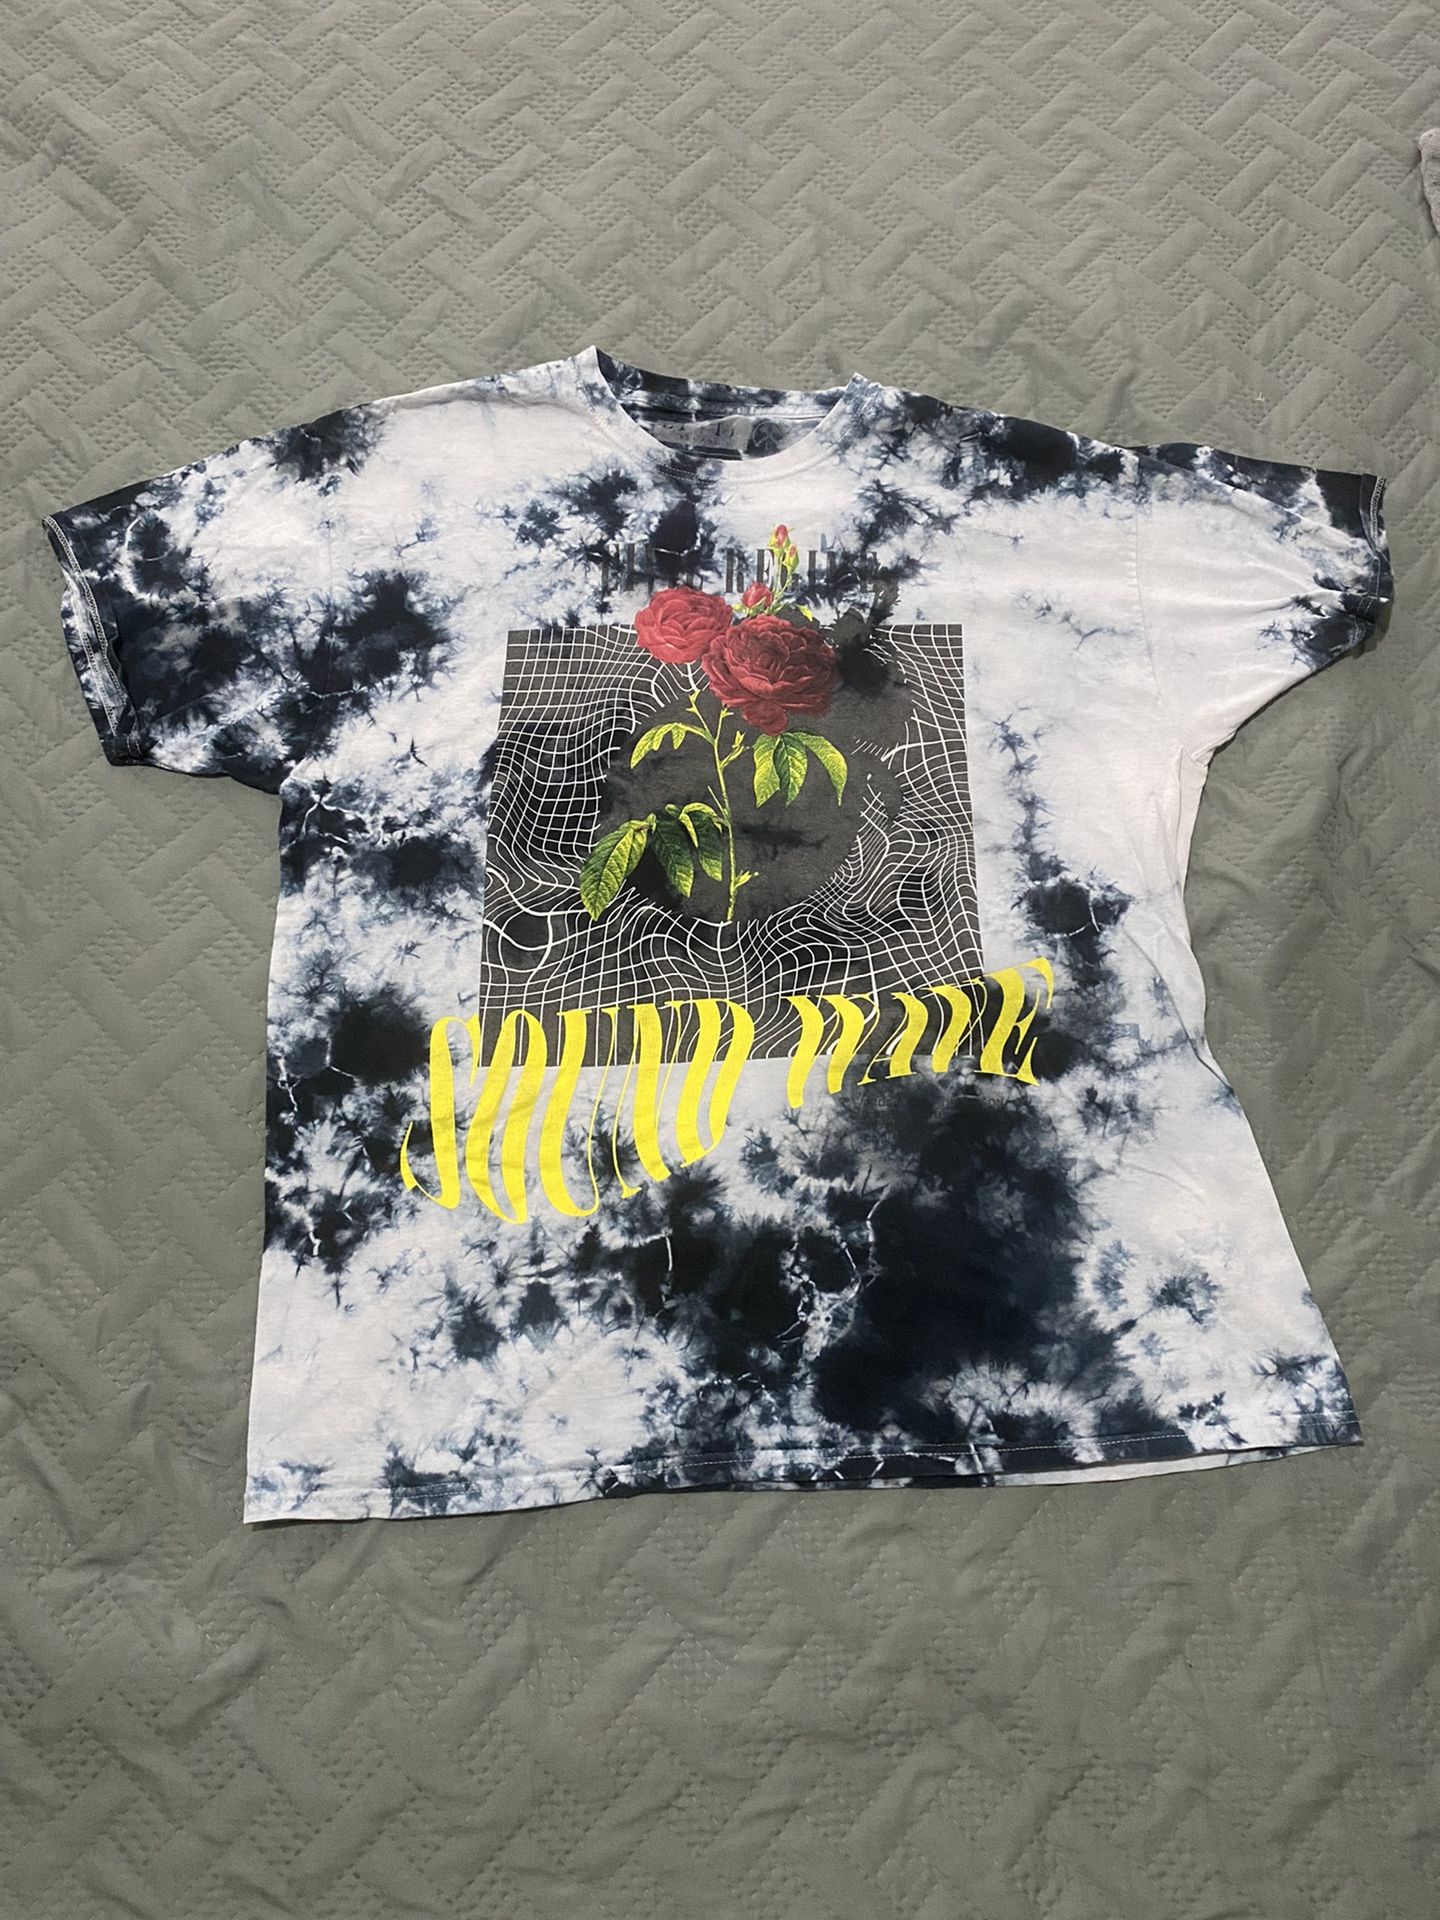 Civil Regime Tye Dye Sound Wave XL Shirt